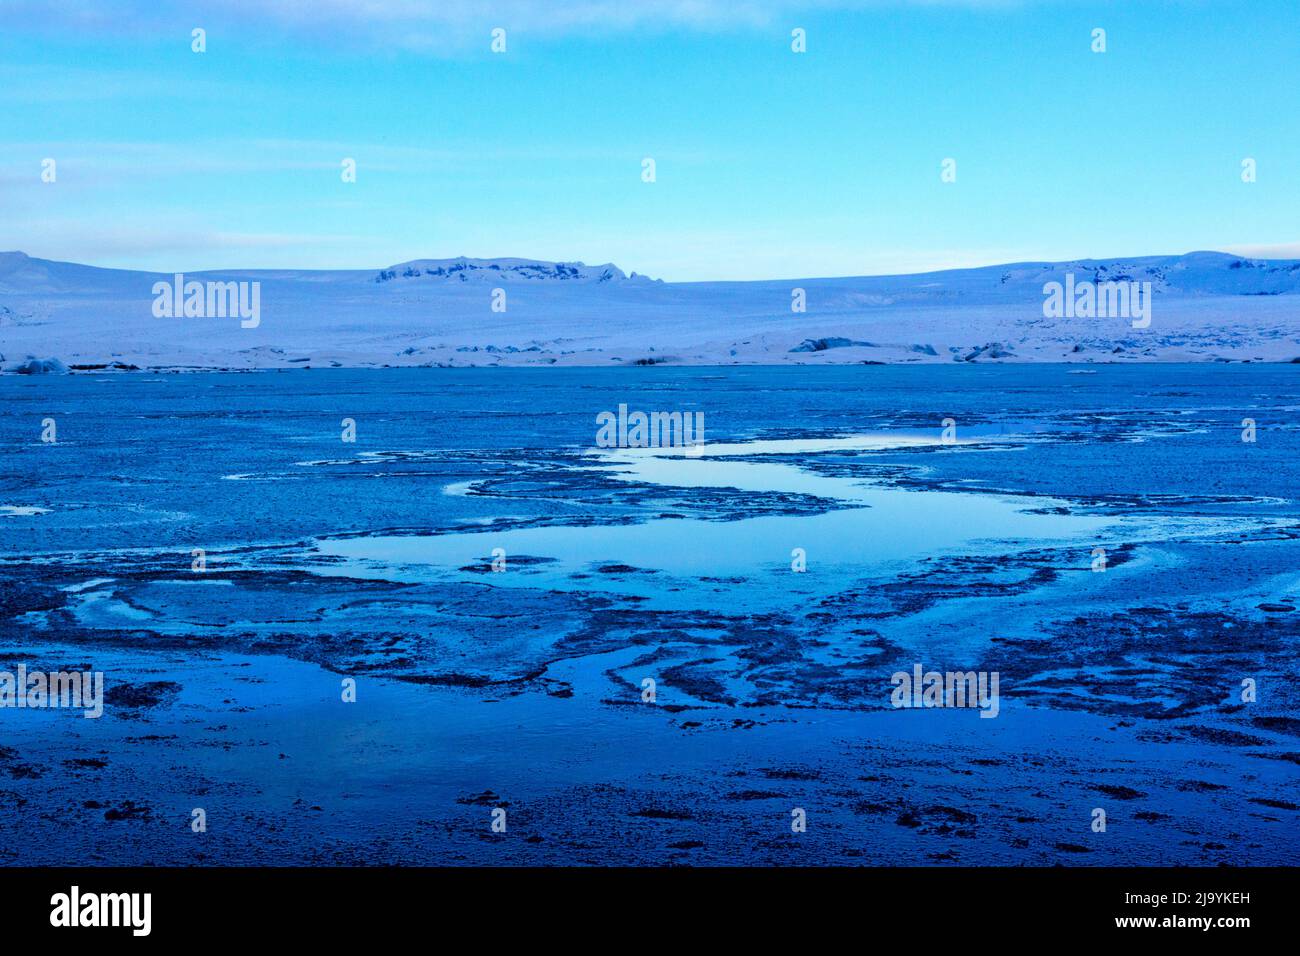 Une vue d'hiver à l'heure bleue le matin sur la lagune de l'iceberg de Jökulsarlön sans icebergs. Le lagon est recouvert d'une couche de glace fine cassée. Banque D'Images